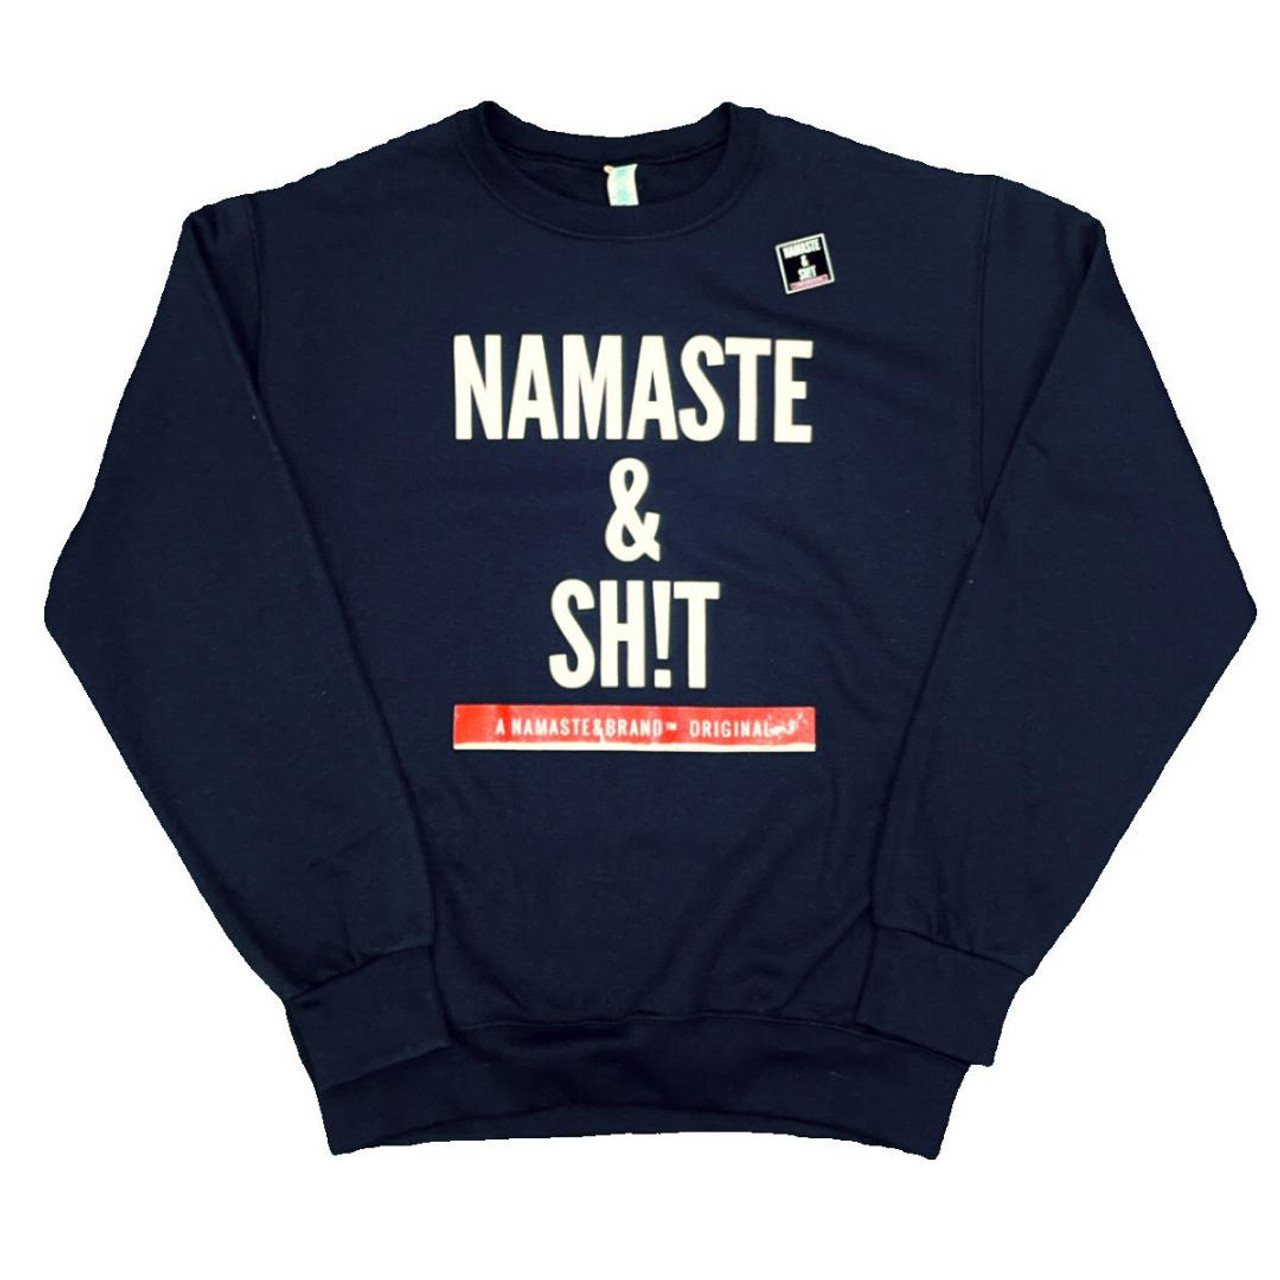 Namaste Brand Namaste & Sh!t Sweatshirt - Black - BUNKER